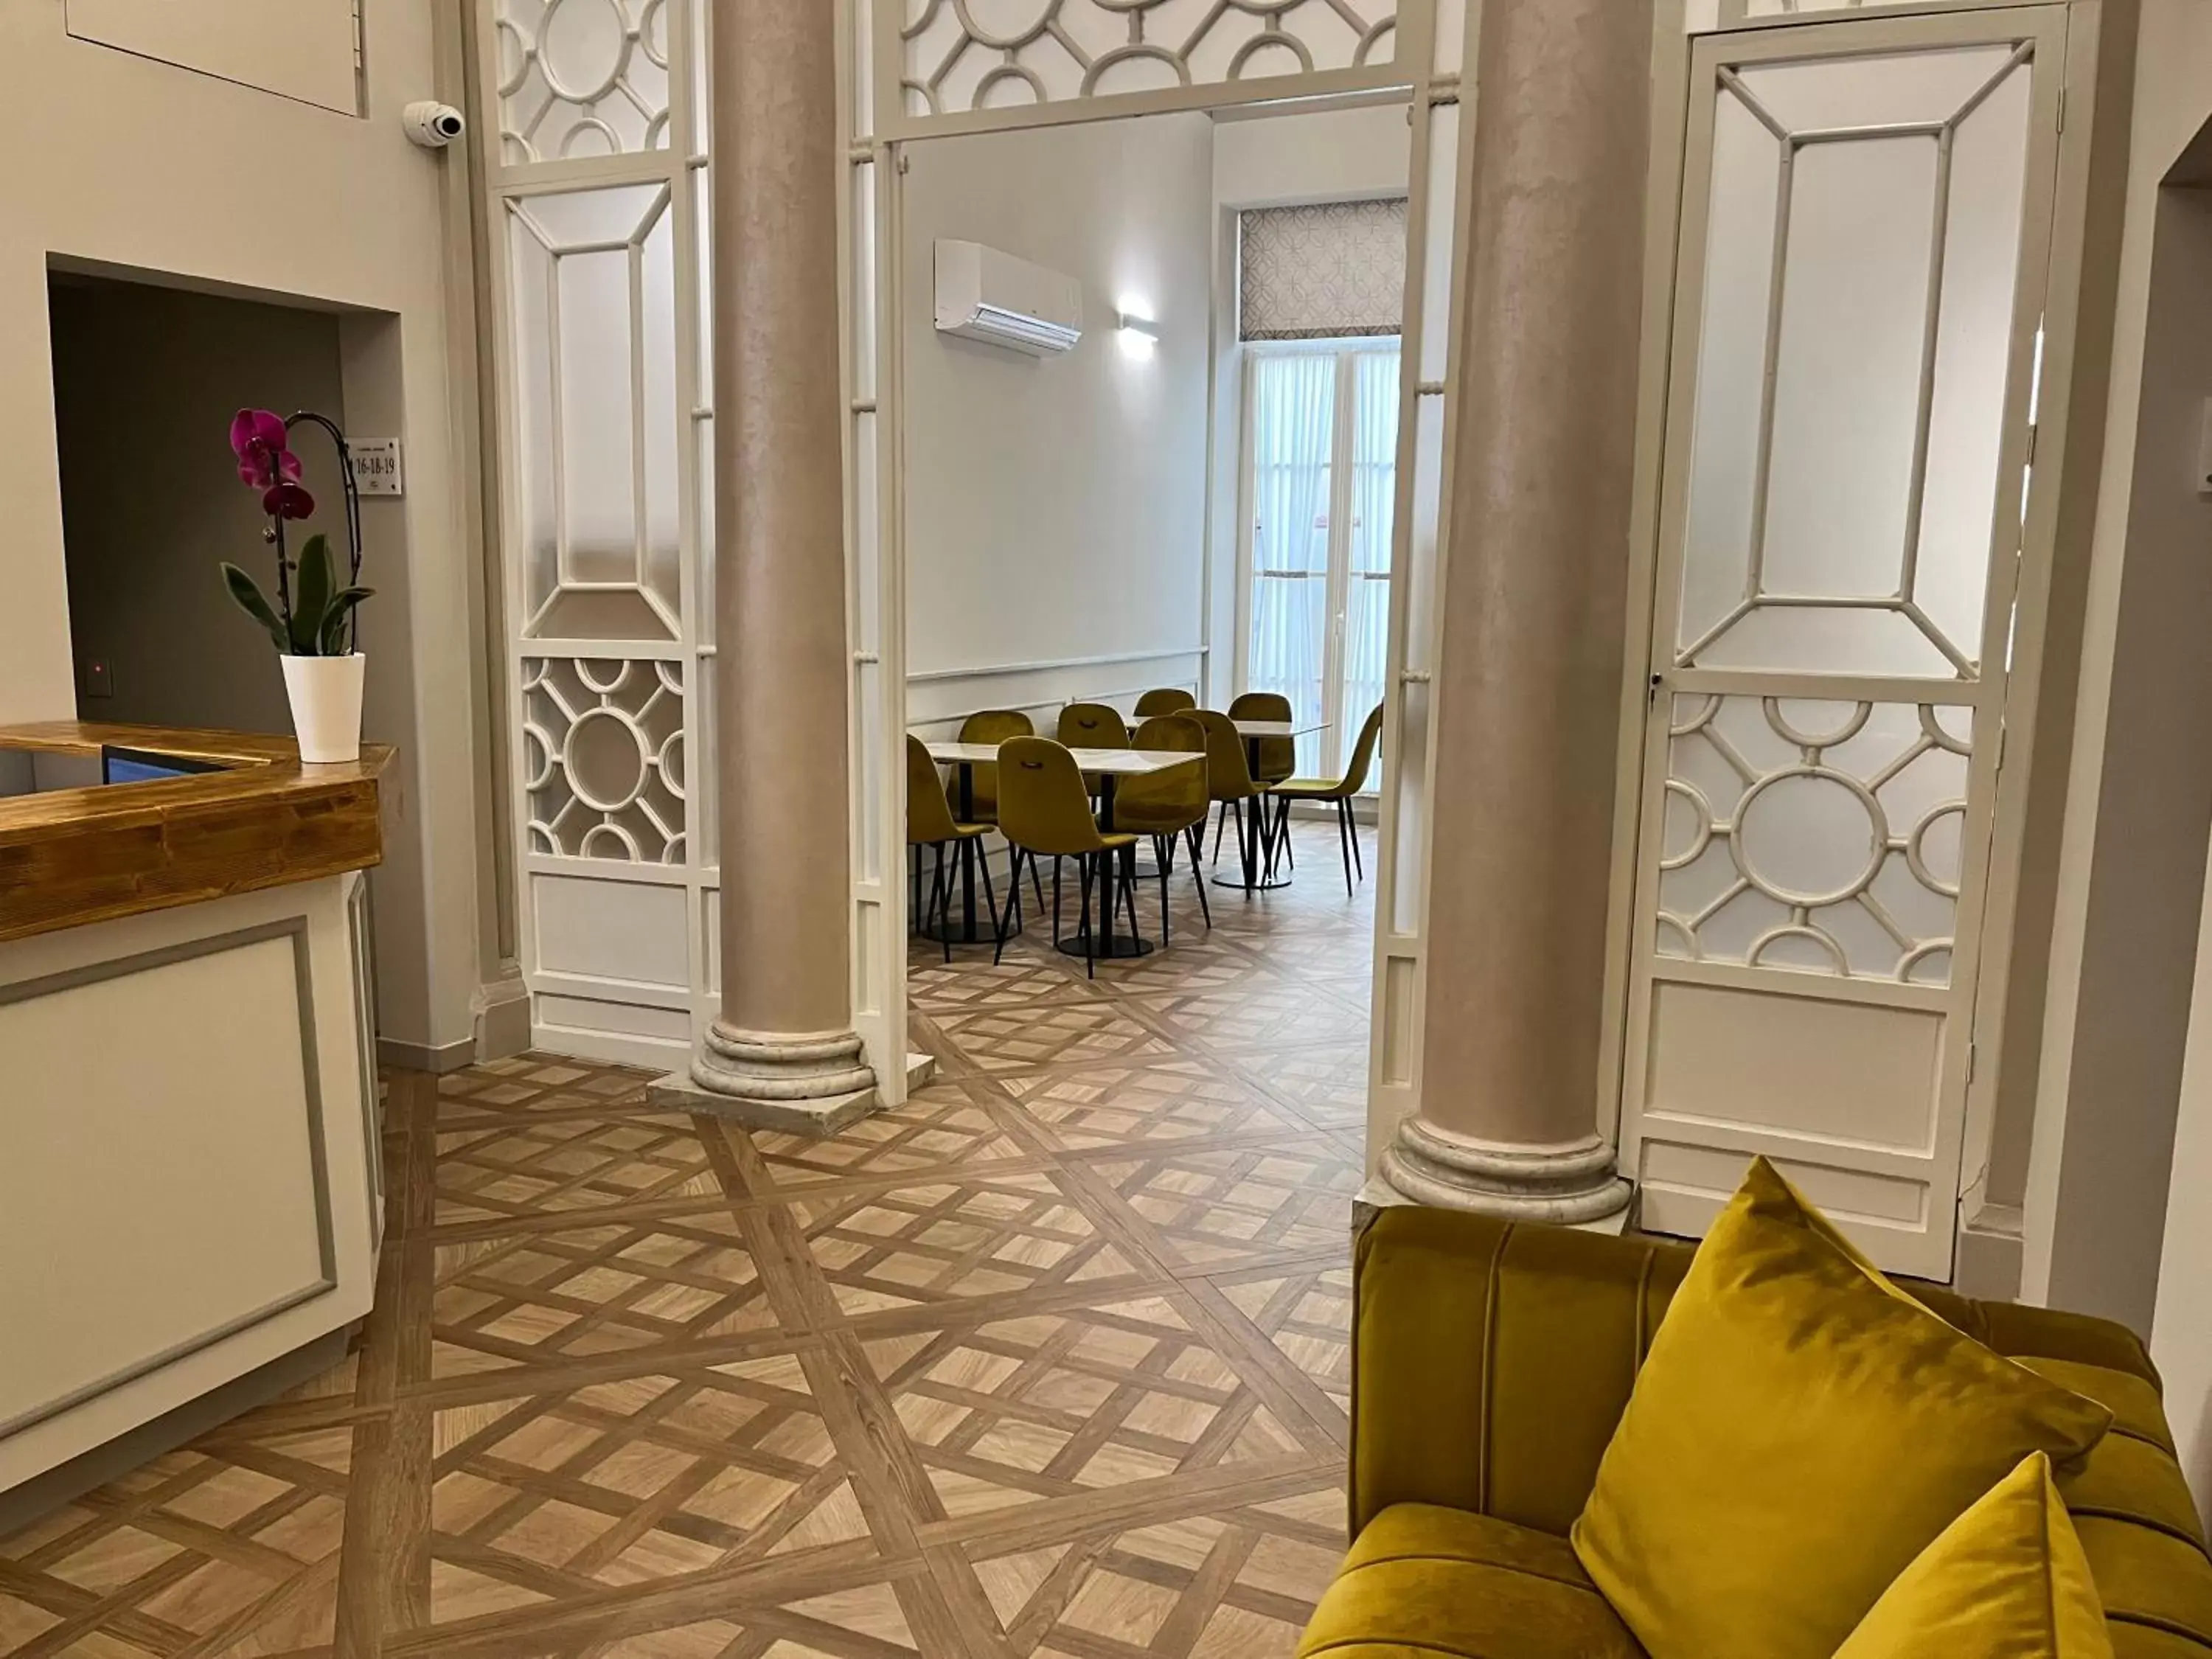 Lobby or reception in Corte dei Sogni Boutique Hotel & spa